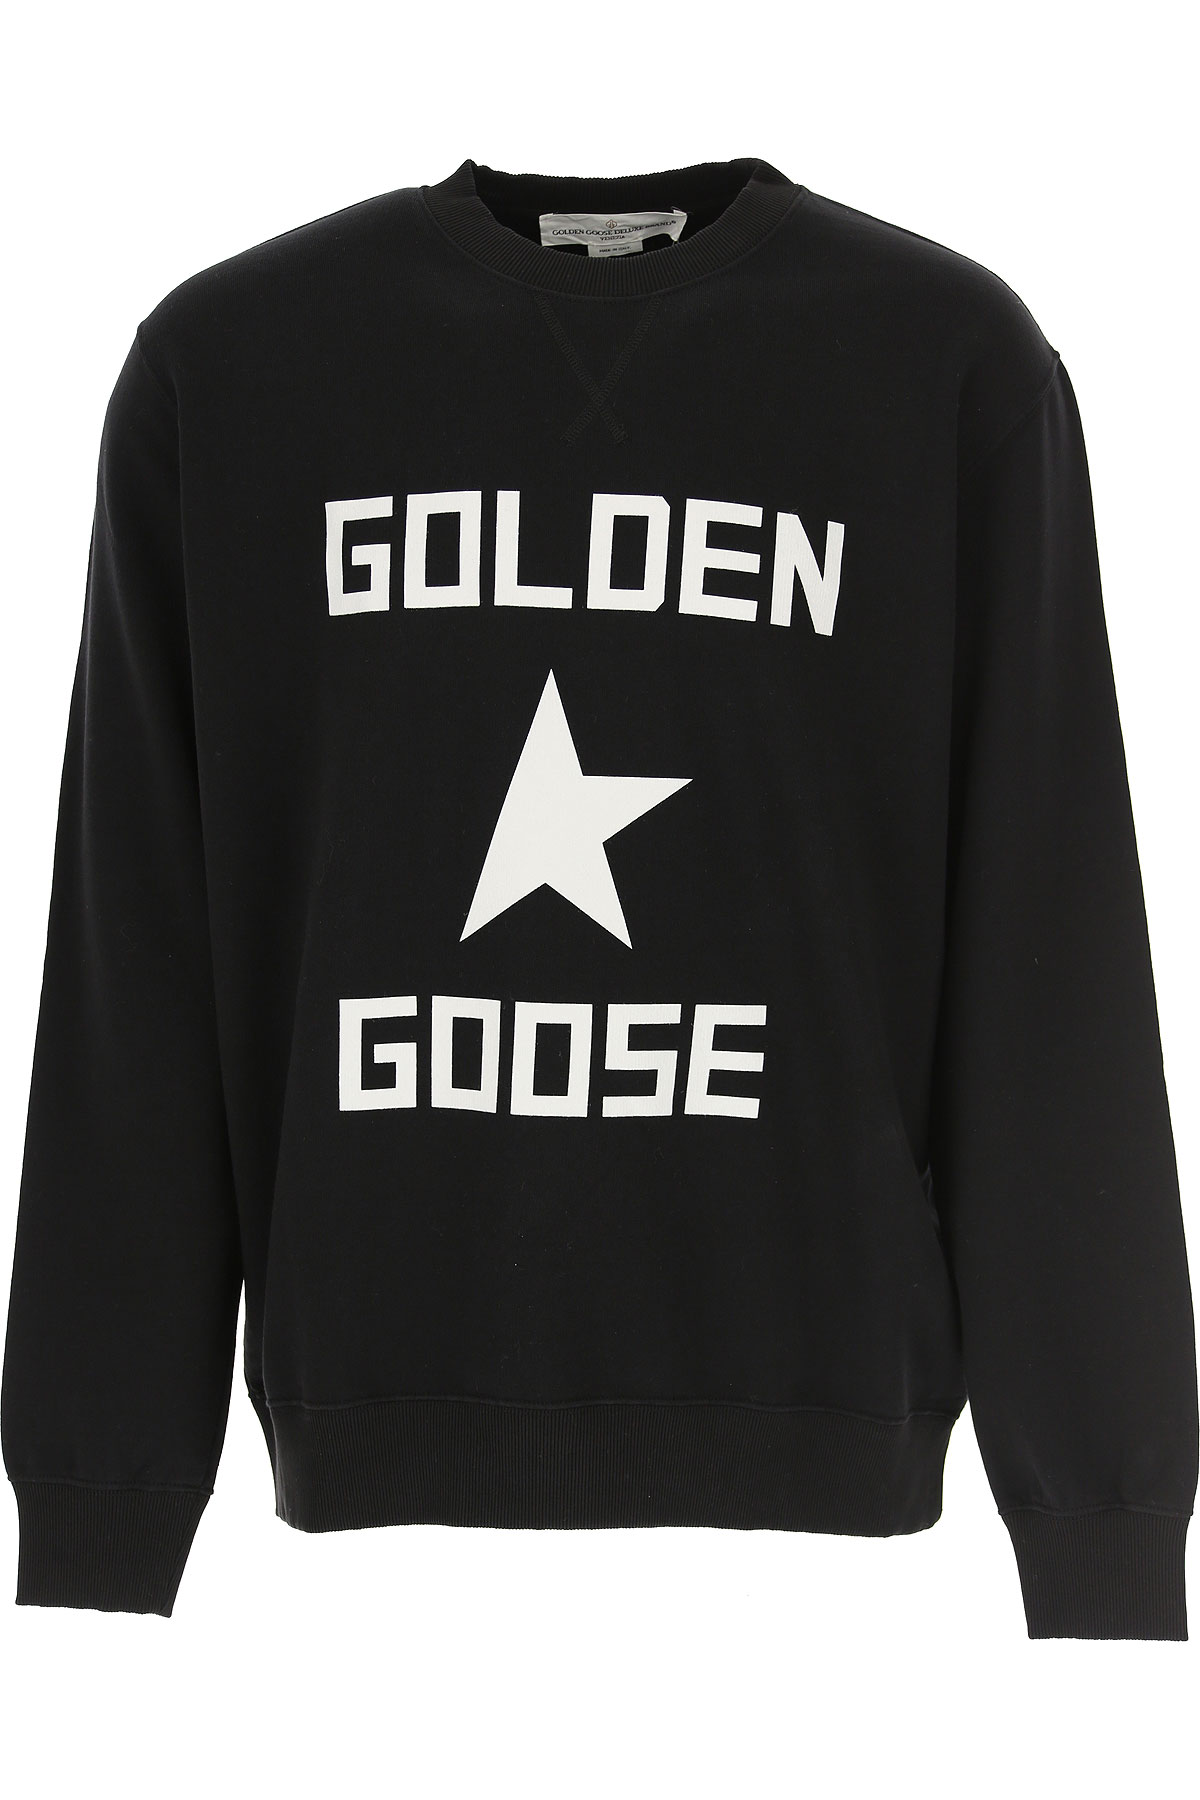 Golden Goose Sweatshirt für Herren, Kapuzenpulli, Hoodie, Sweats Günstig im Sale, Schwarz, Baumwolle, 2017, L S